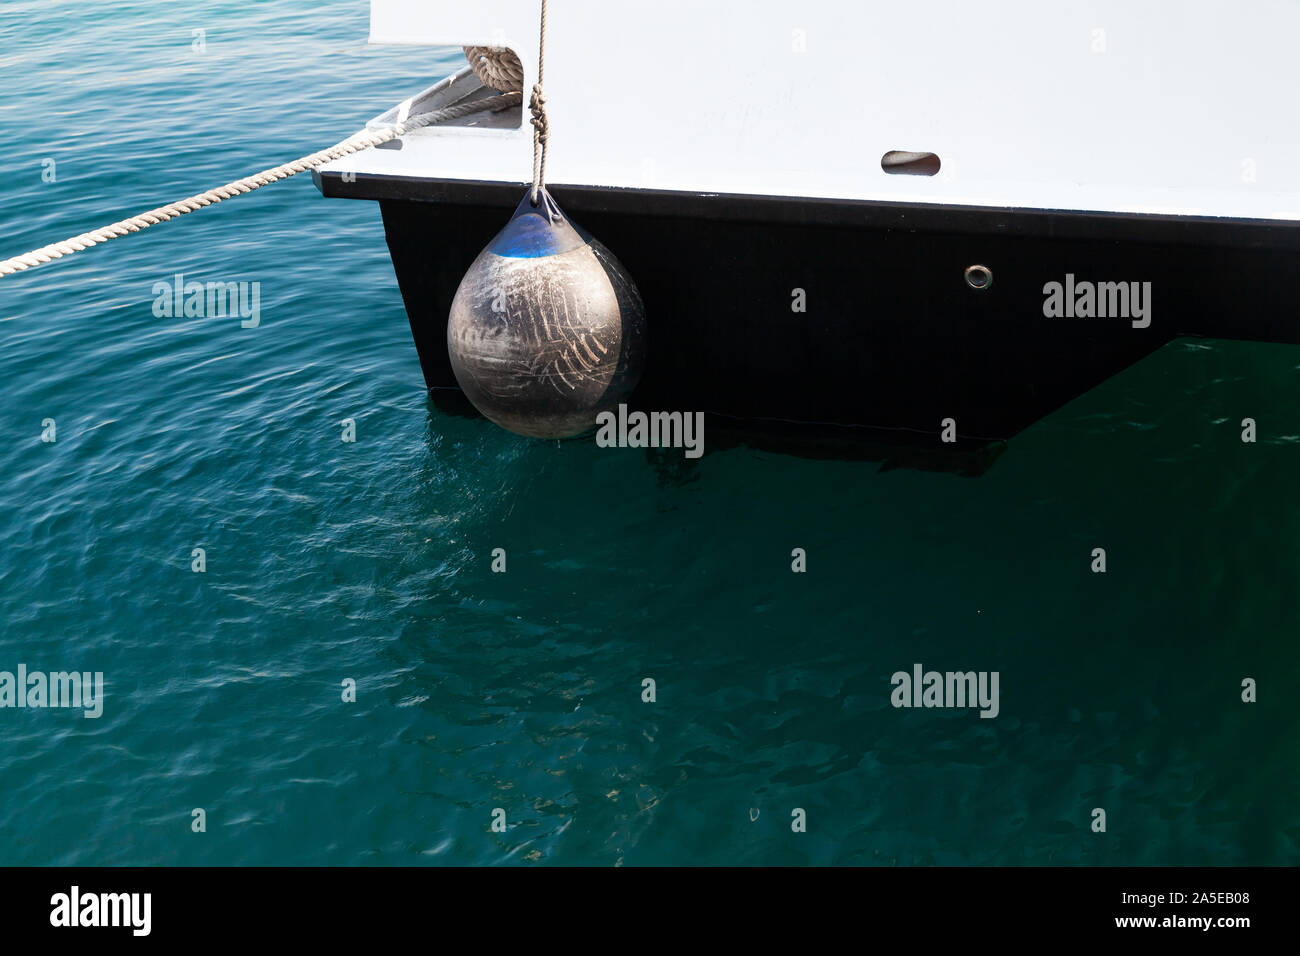 L'aile bateau bouée d'ancrage ronde, balle accrochée à un yacht de Stern Banque D'Images